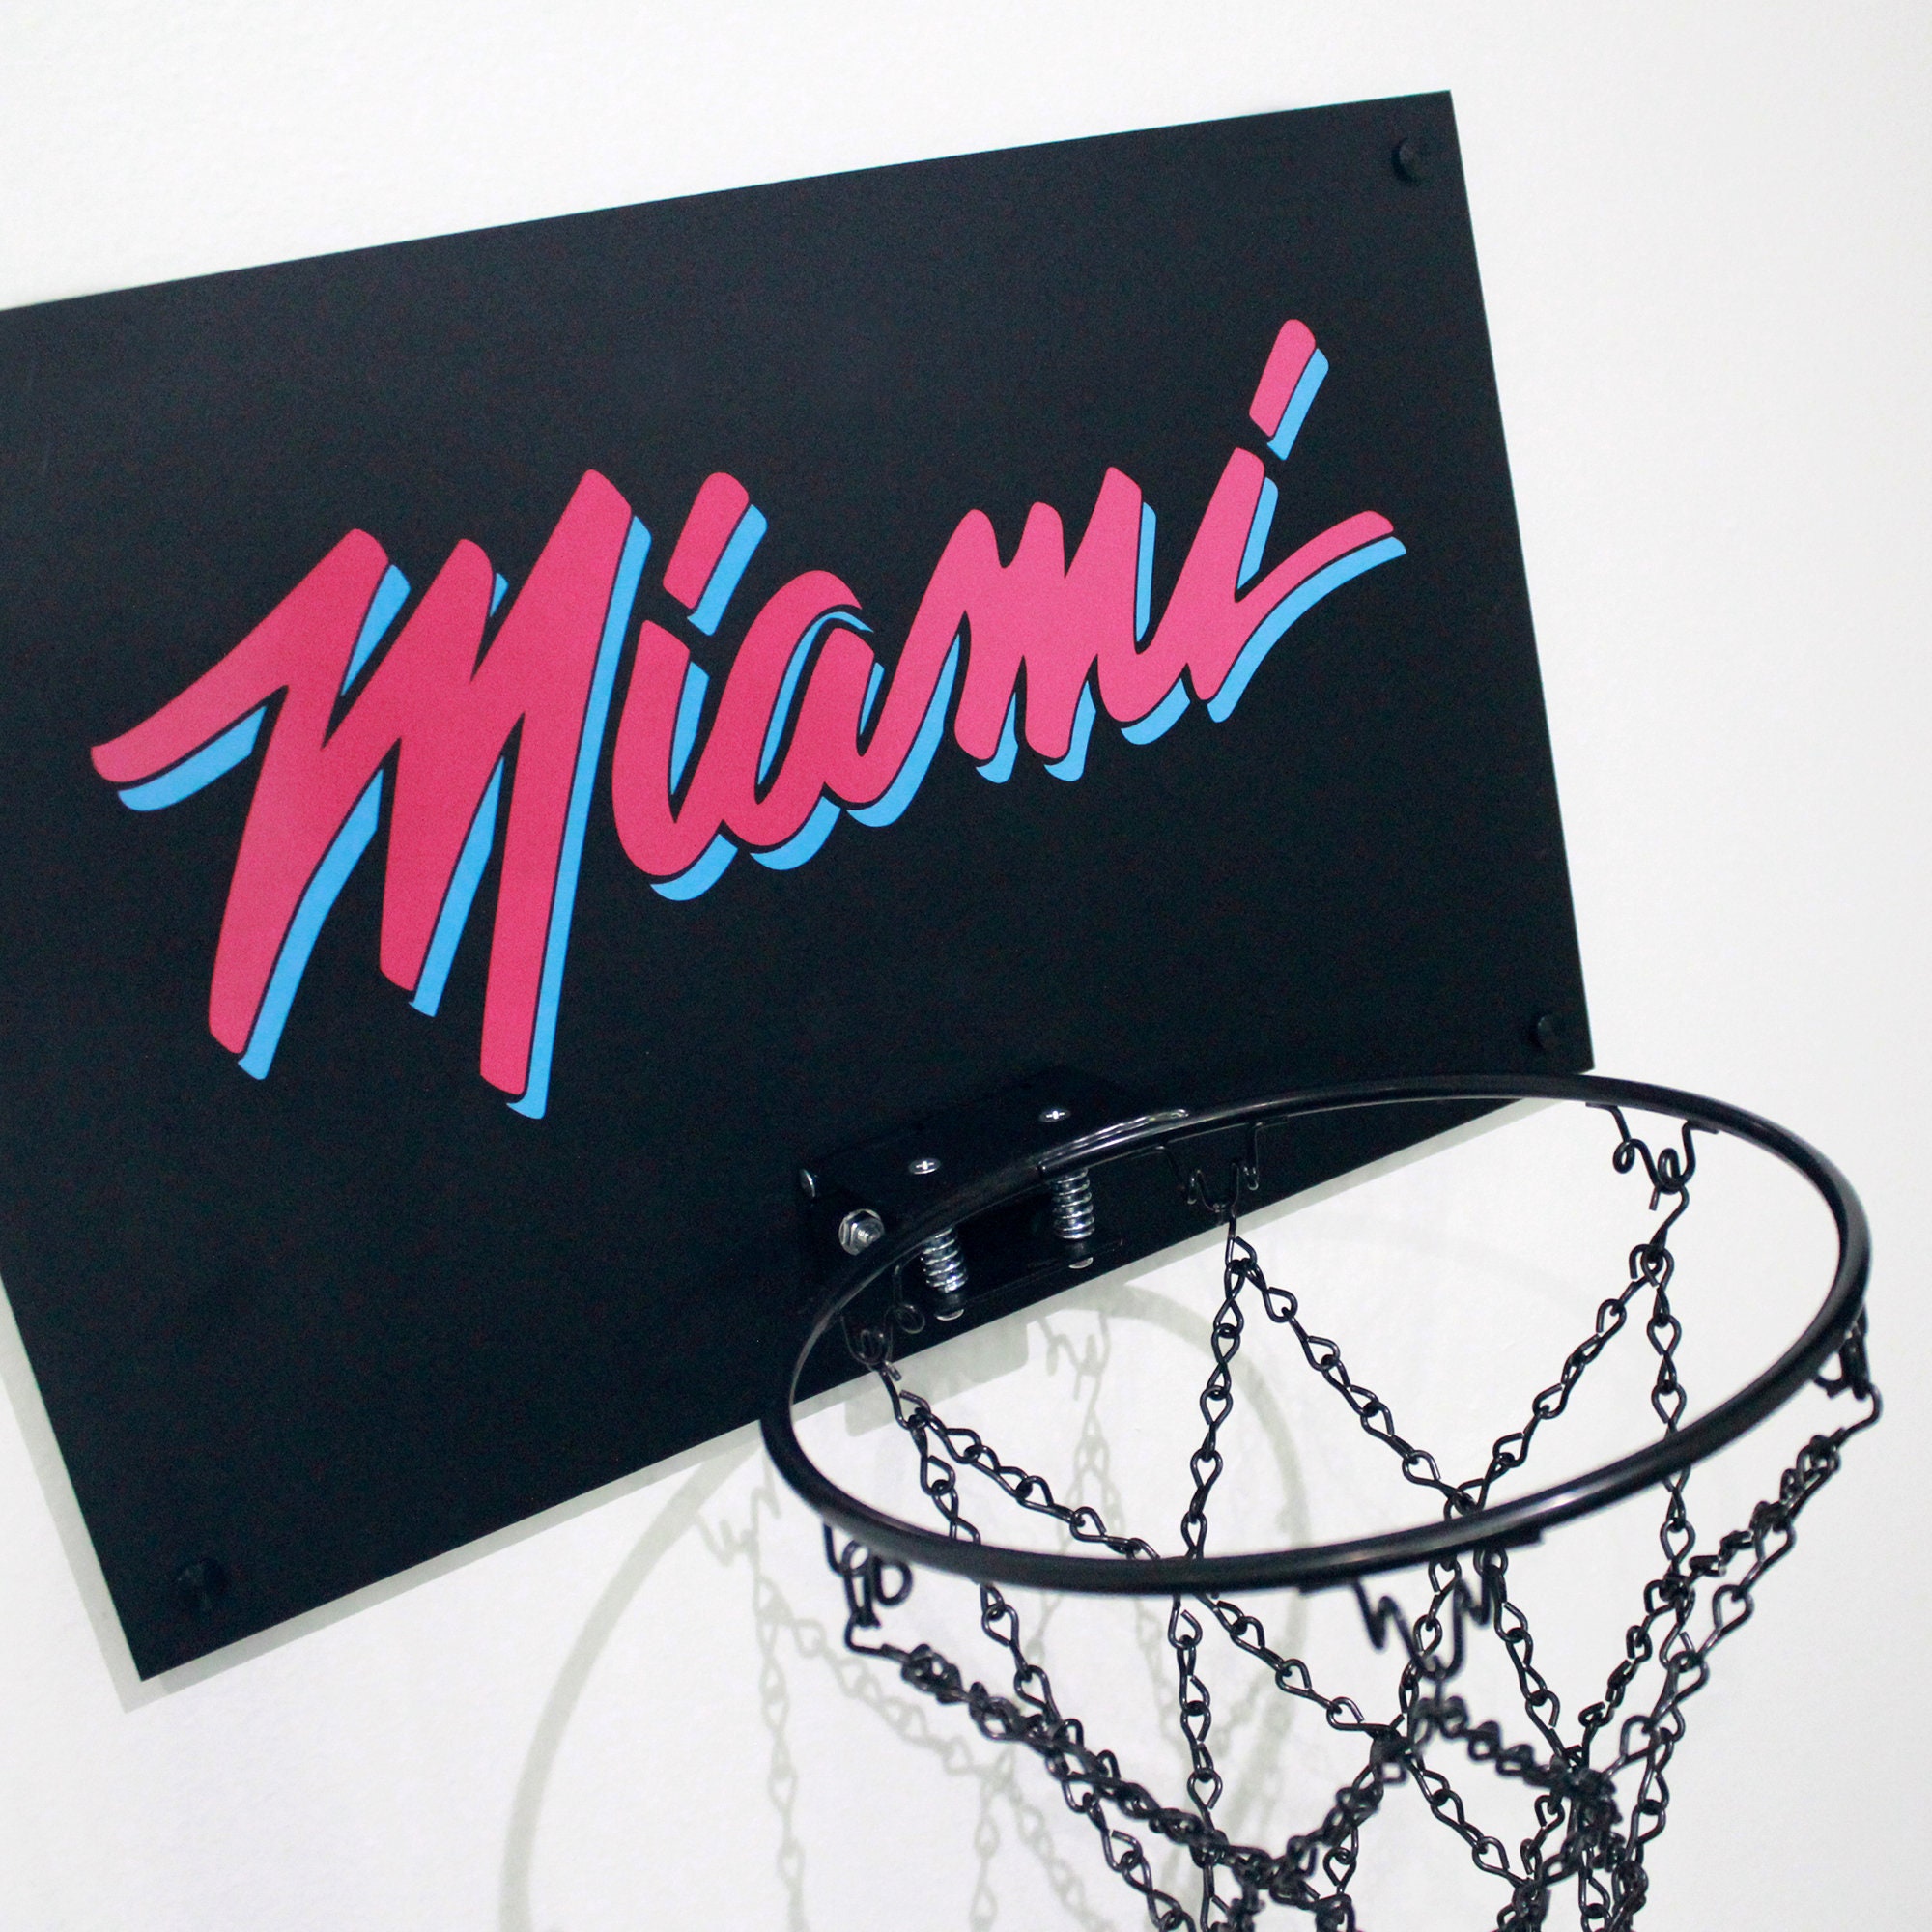 Miami Heat Vice Jerseys by NewtDesigns on DeviantArt